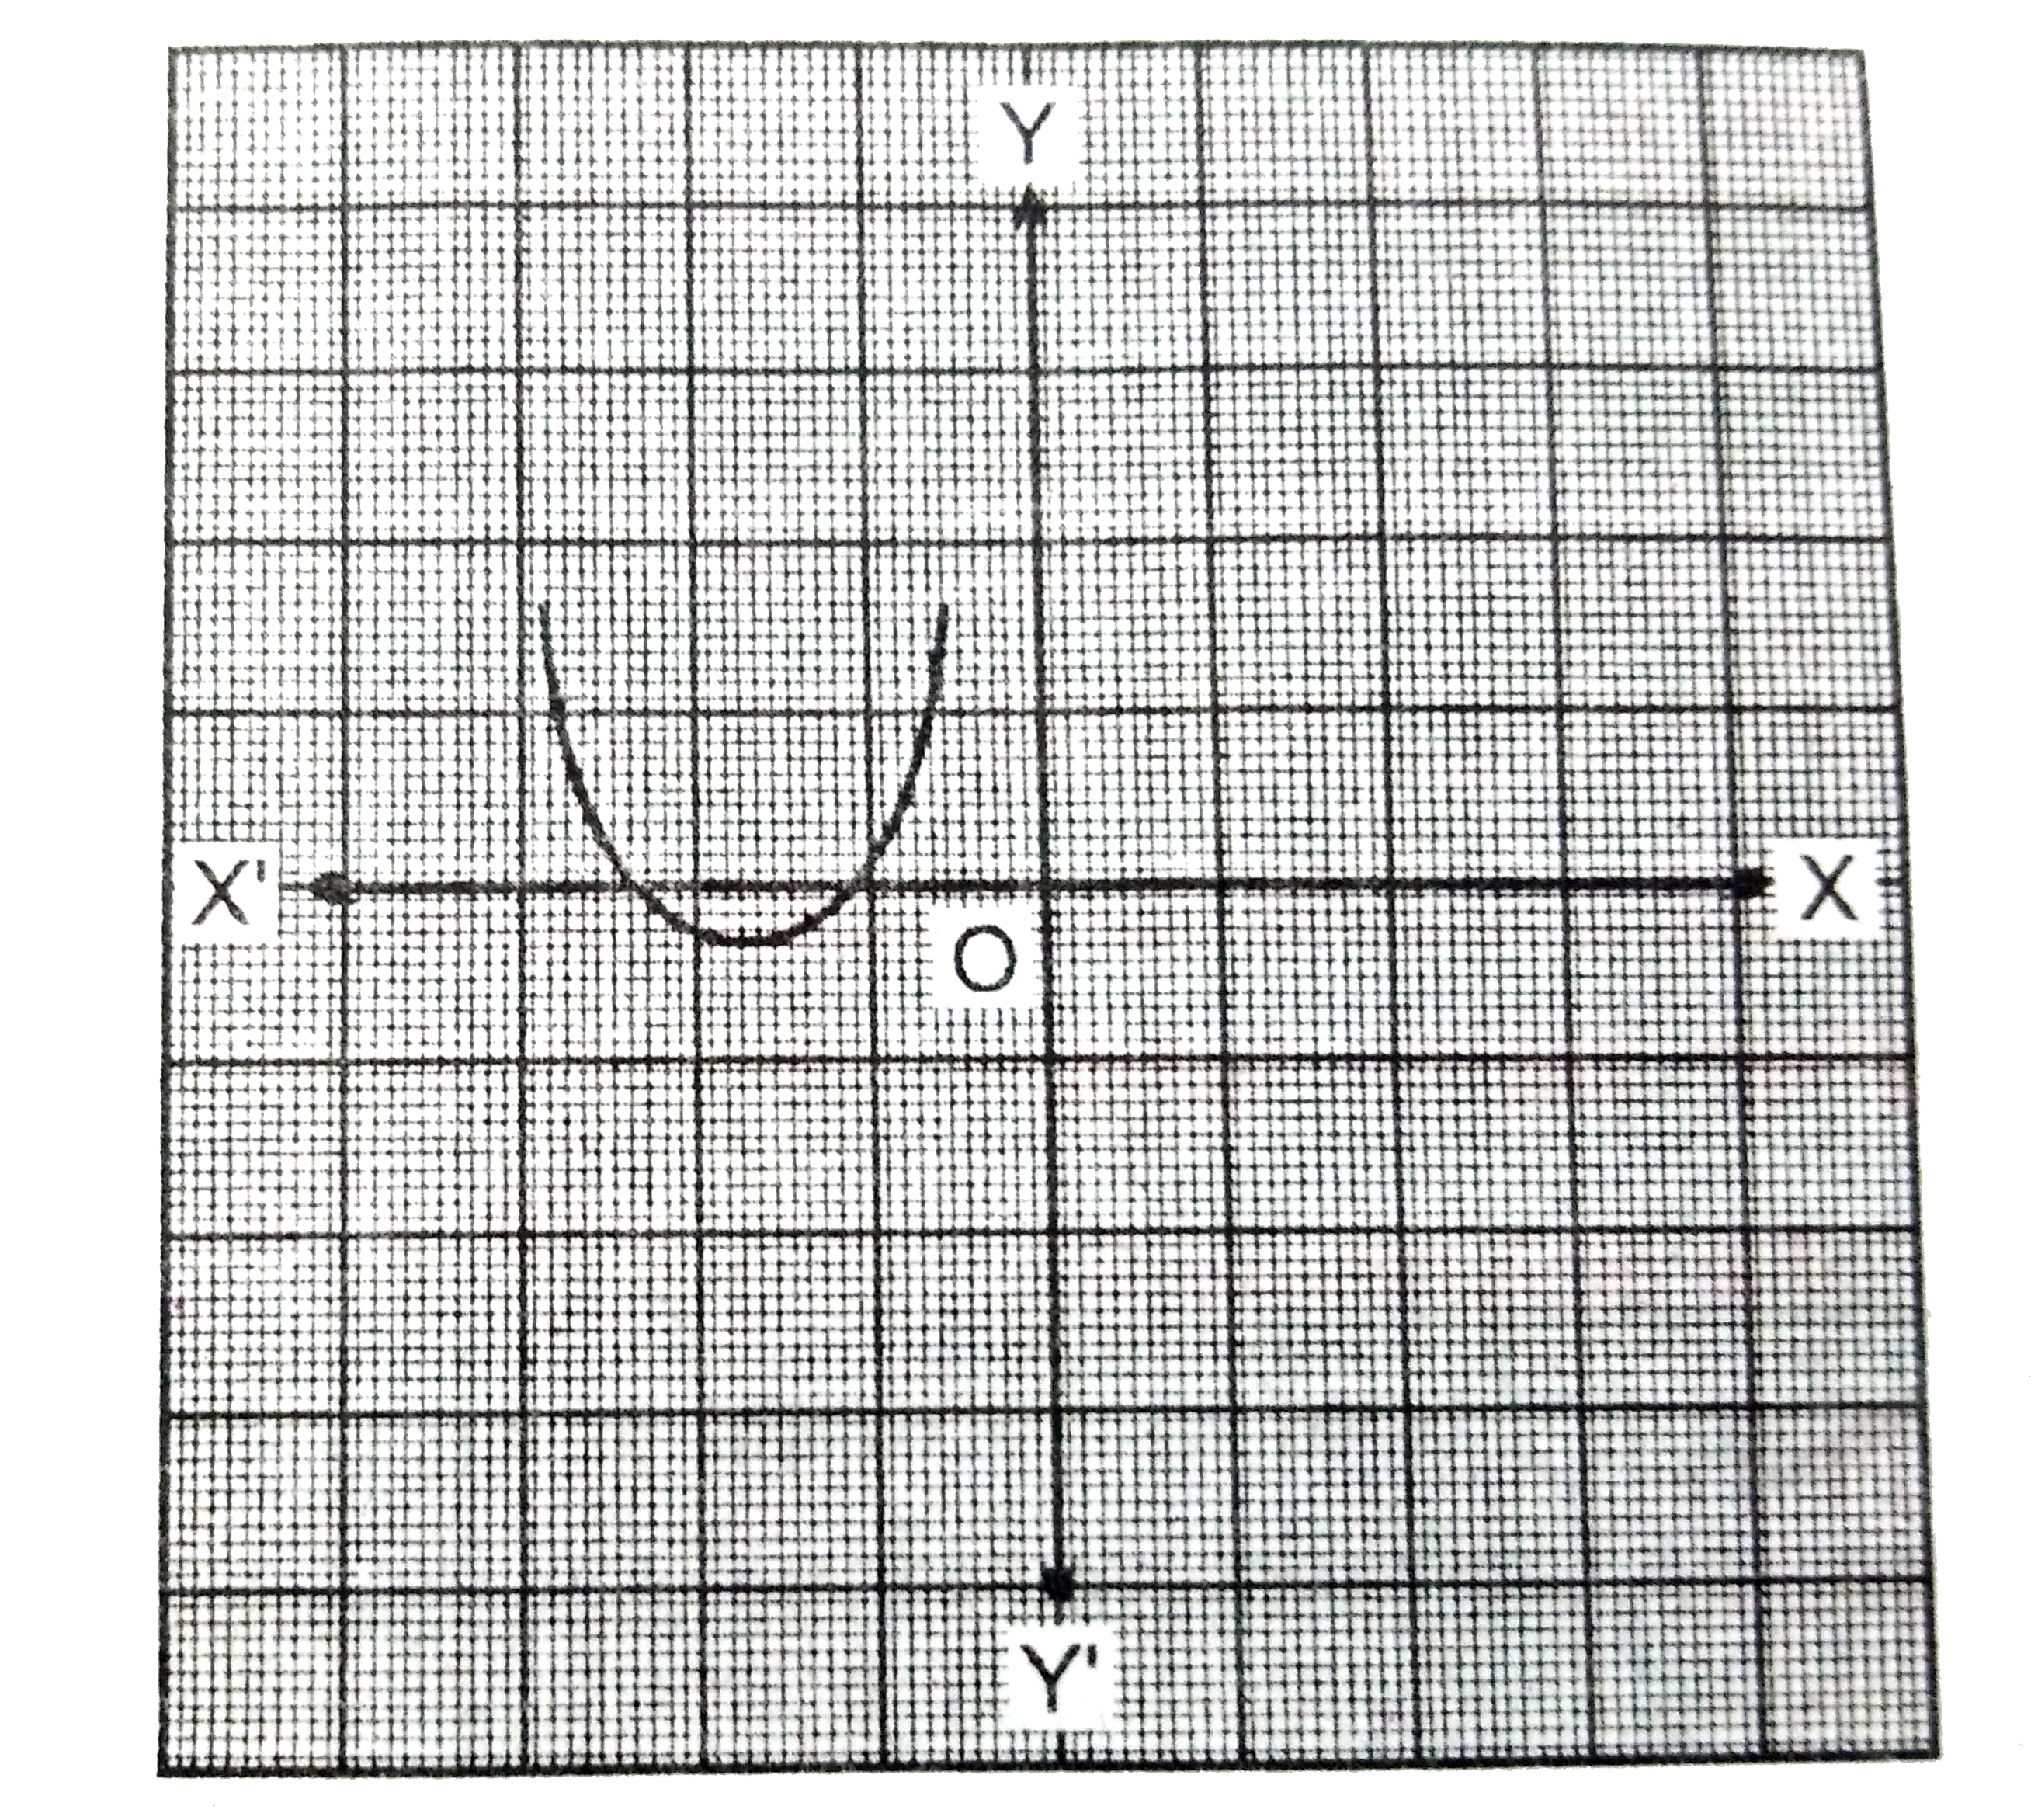 नीचे चित्र में y=p(x) के आलेख दिया गया है जहाँ p(x) एक बहुपद है | प्रत्येक स्थिति में शून्यांक की संख्या ज्ञात कीजिए |